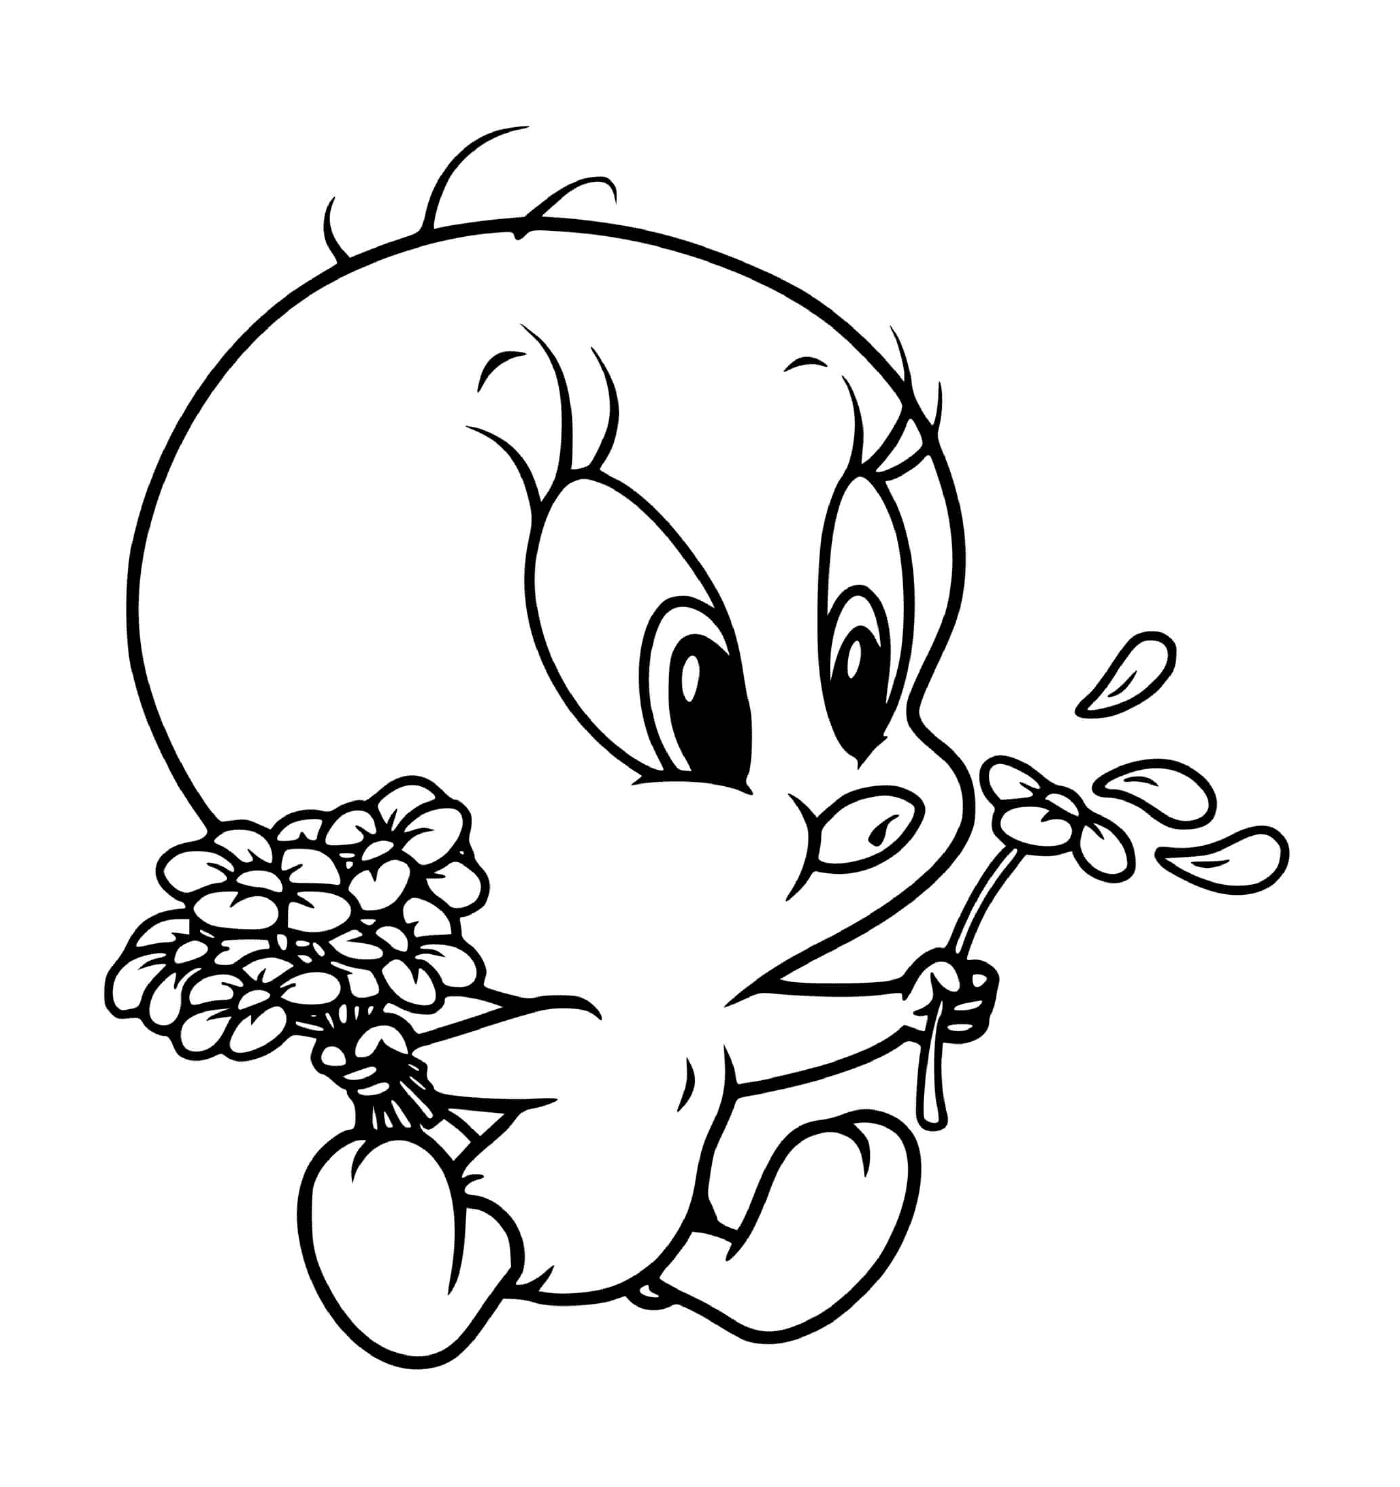  Baby Titi bläst Blumen 